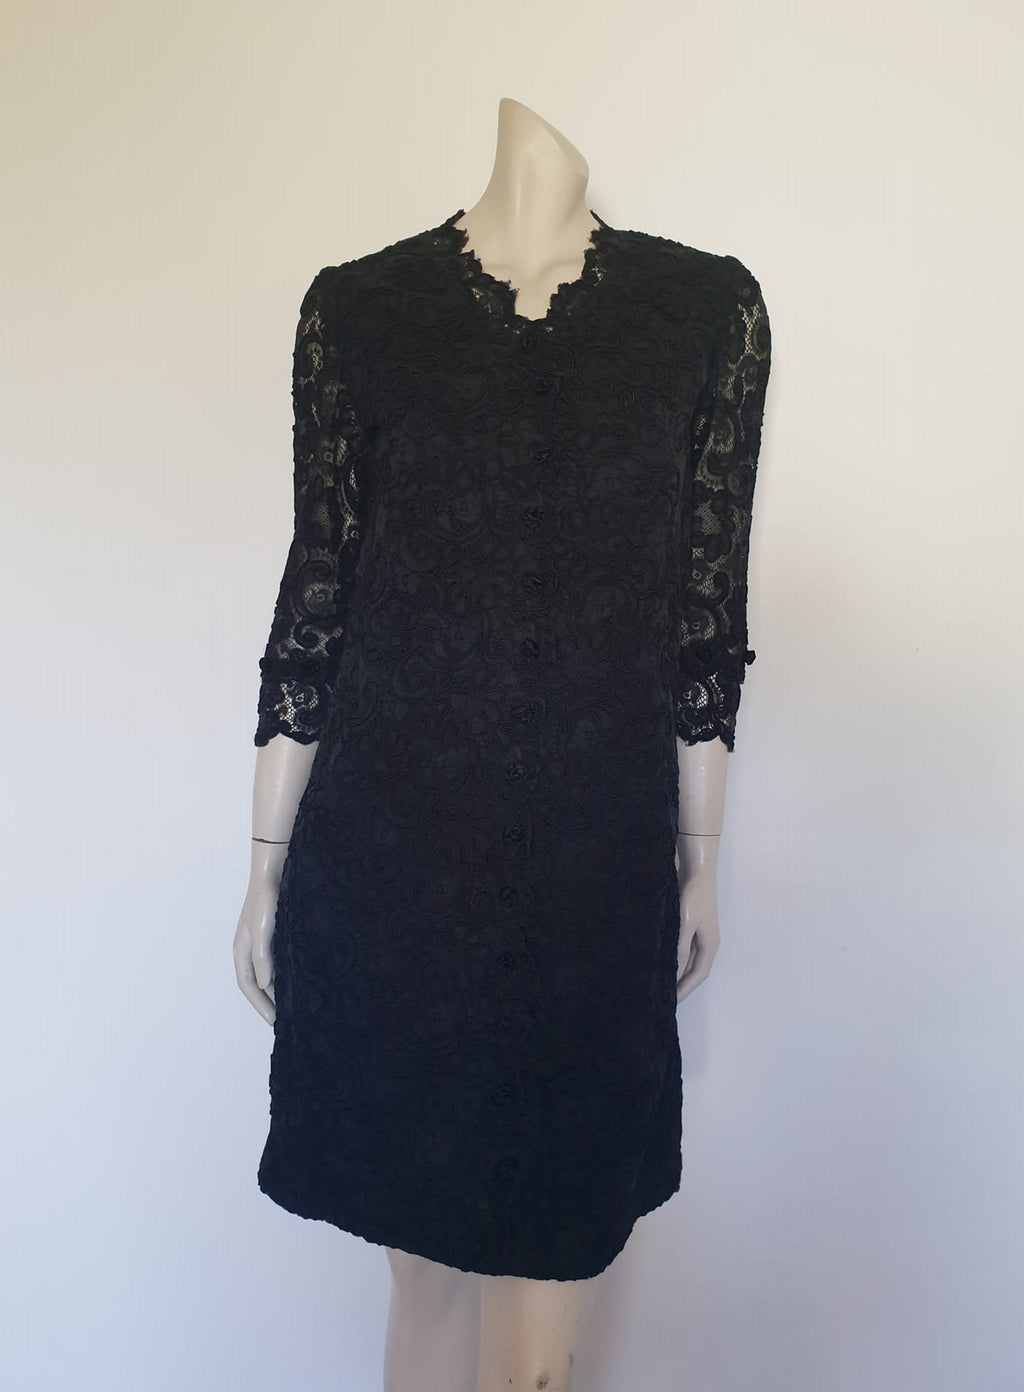 1960s vintage black lace cocktail dress